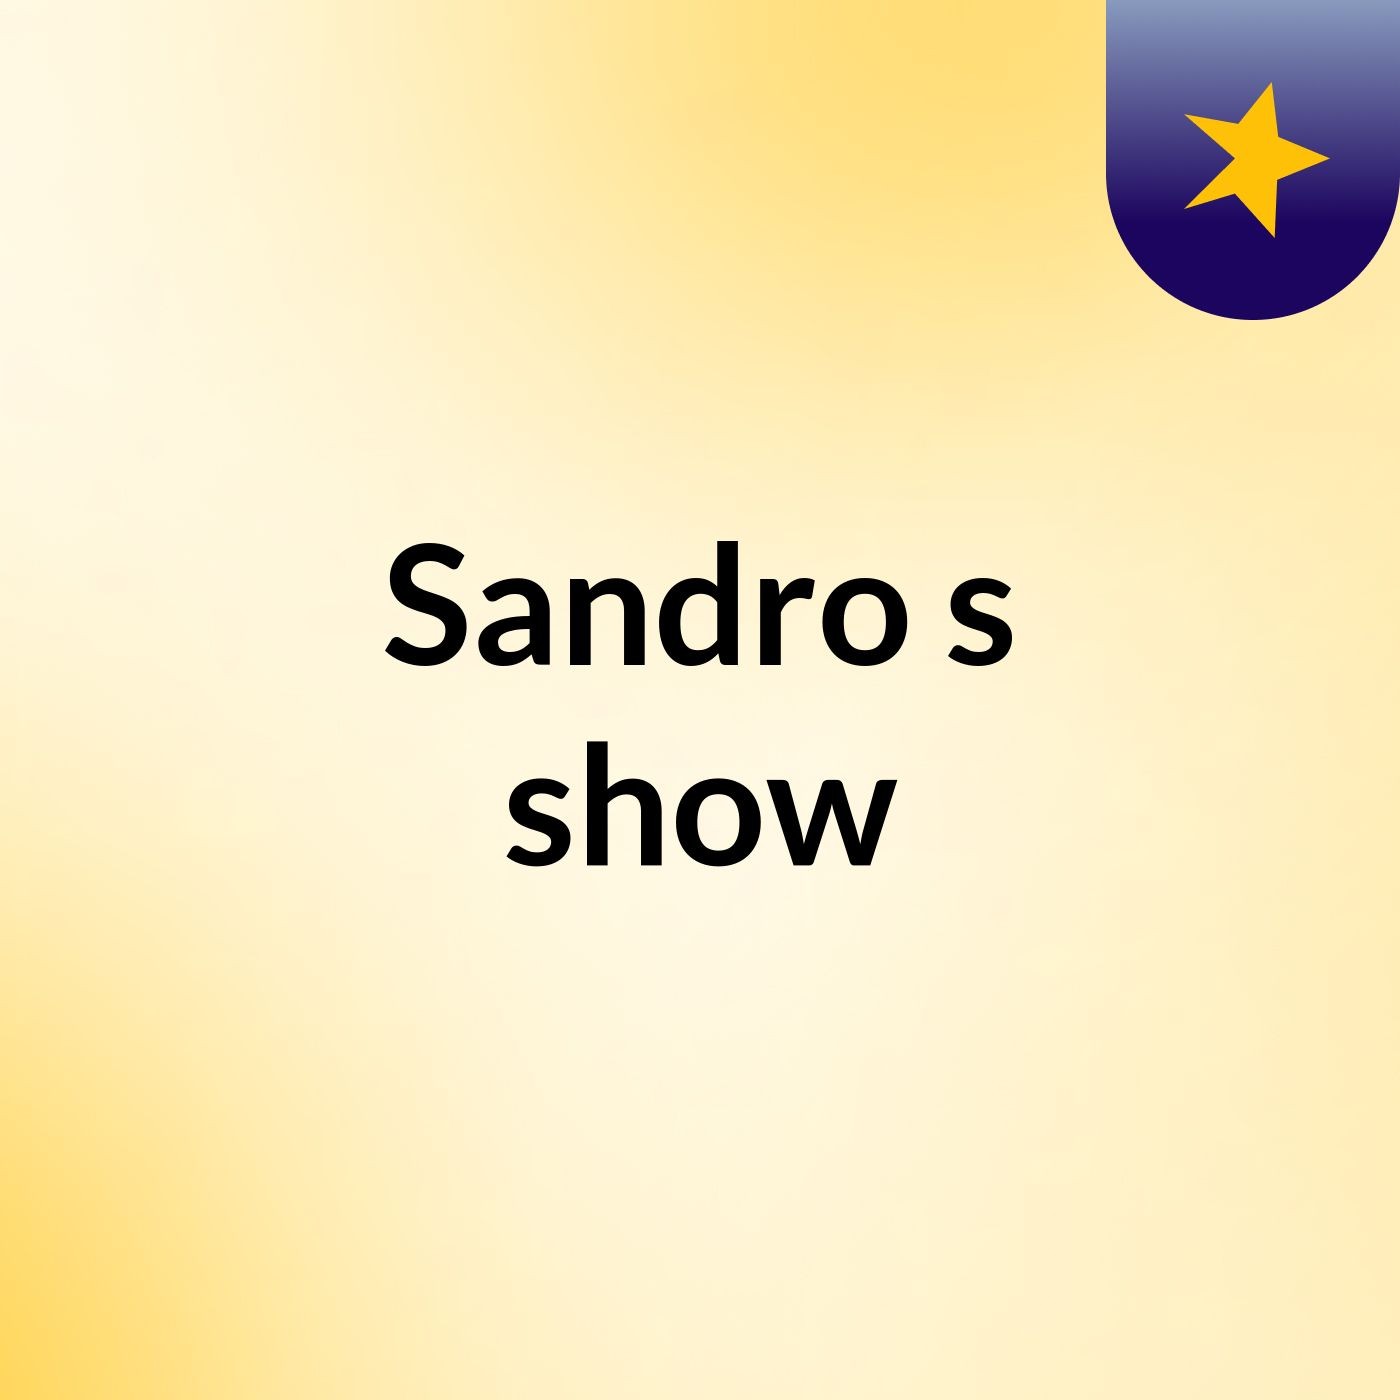 Sandro's show